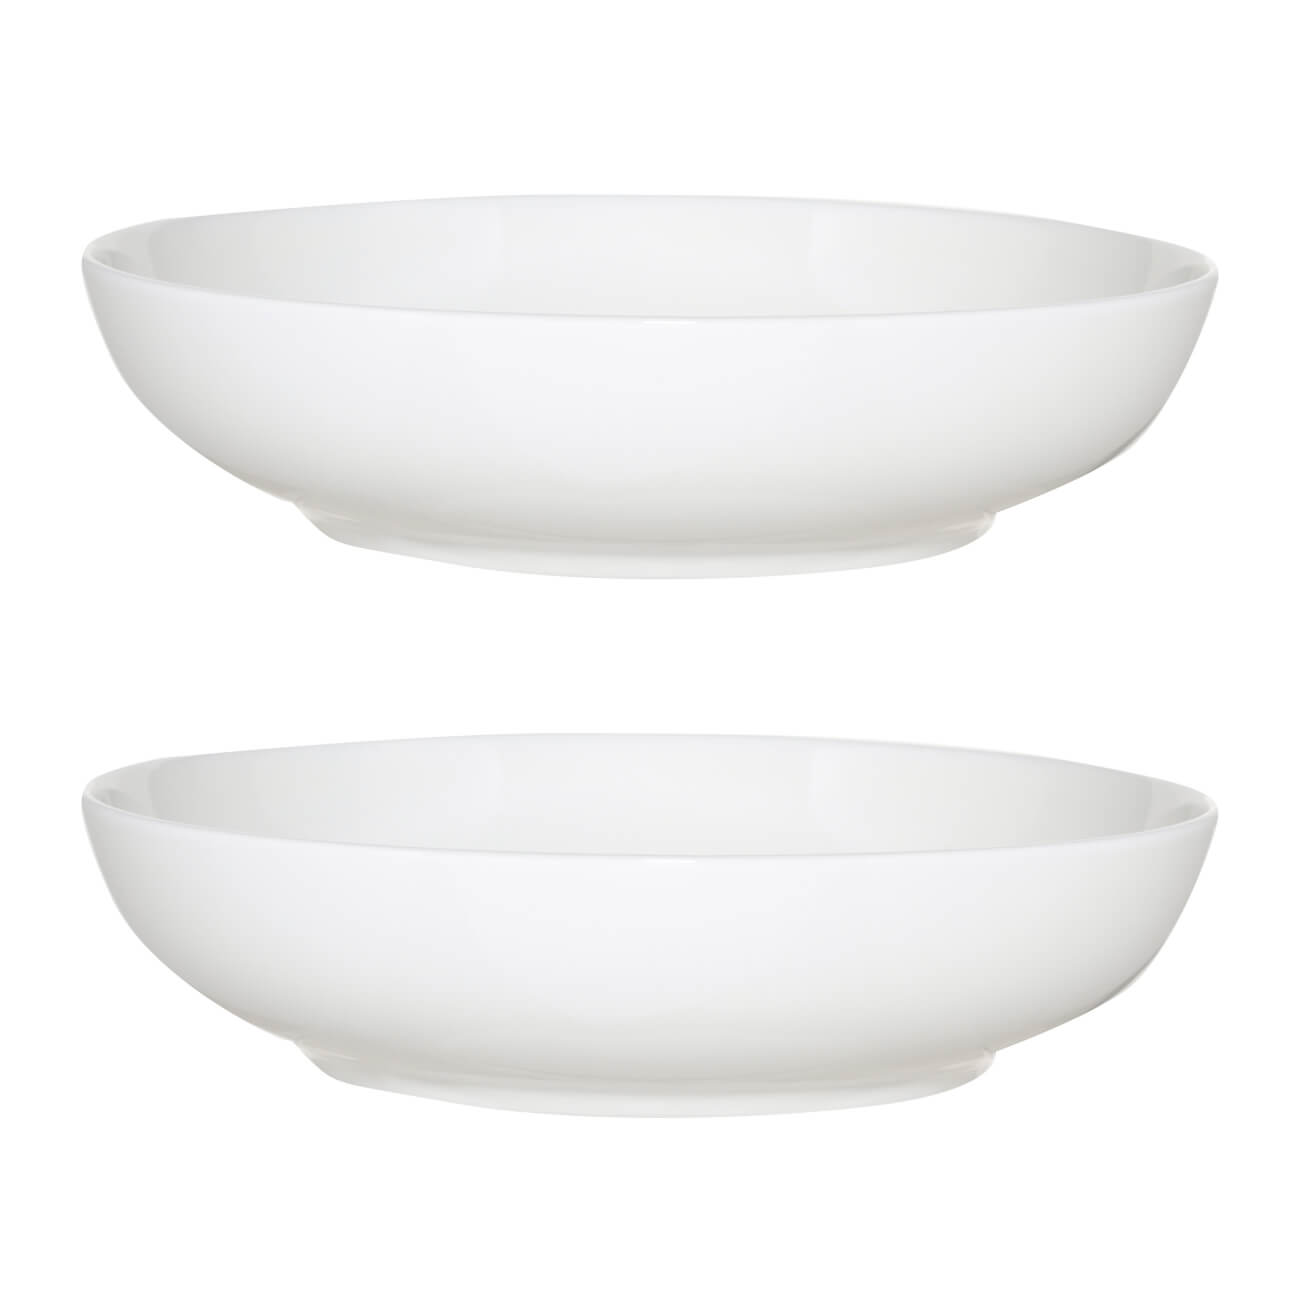 Soup plate, 20 cm, 2 pcs, porcelain F, white, Ideal white изображение № 1